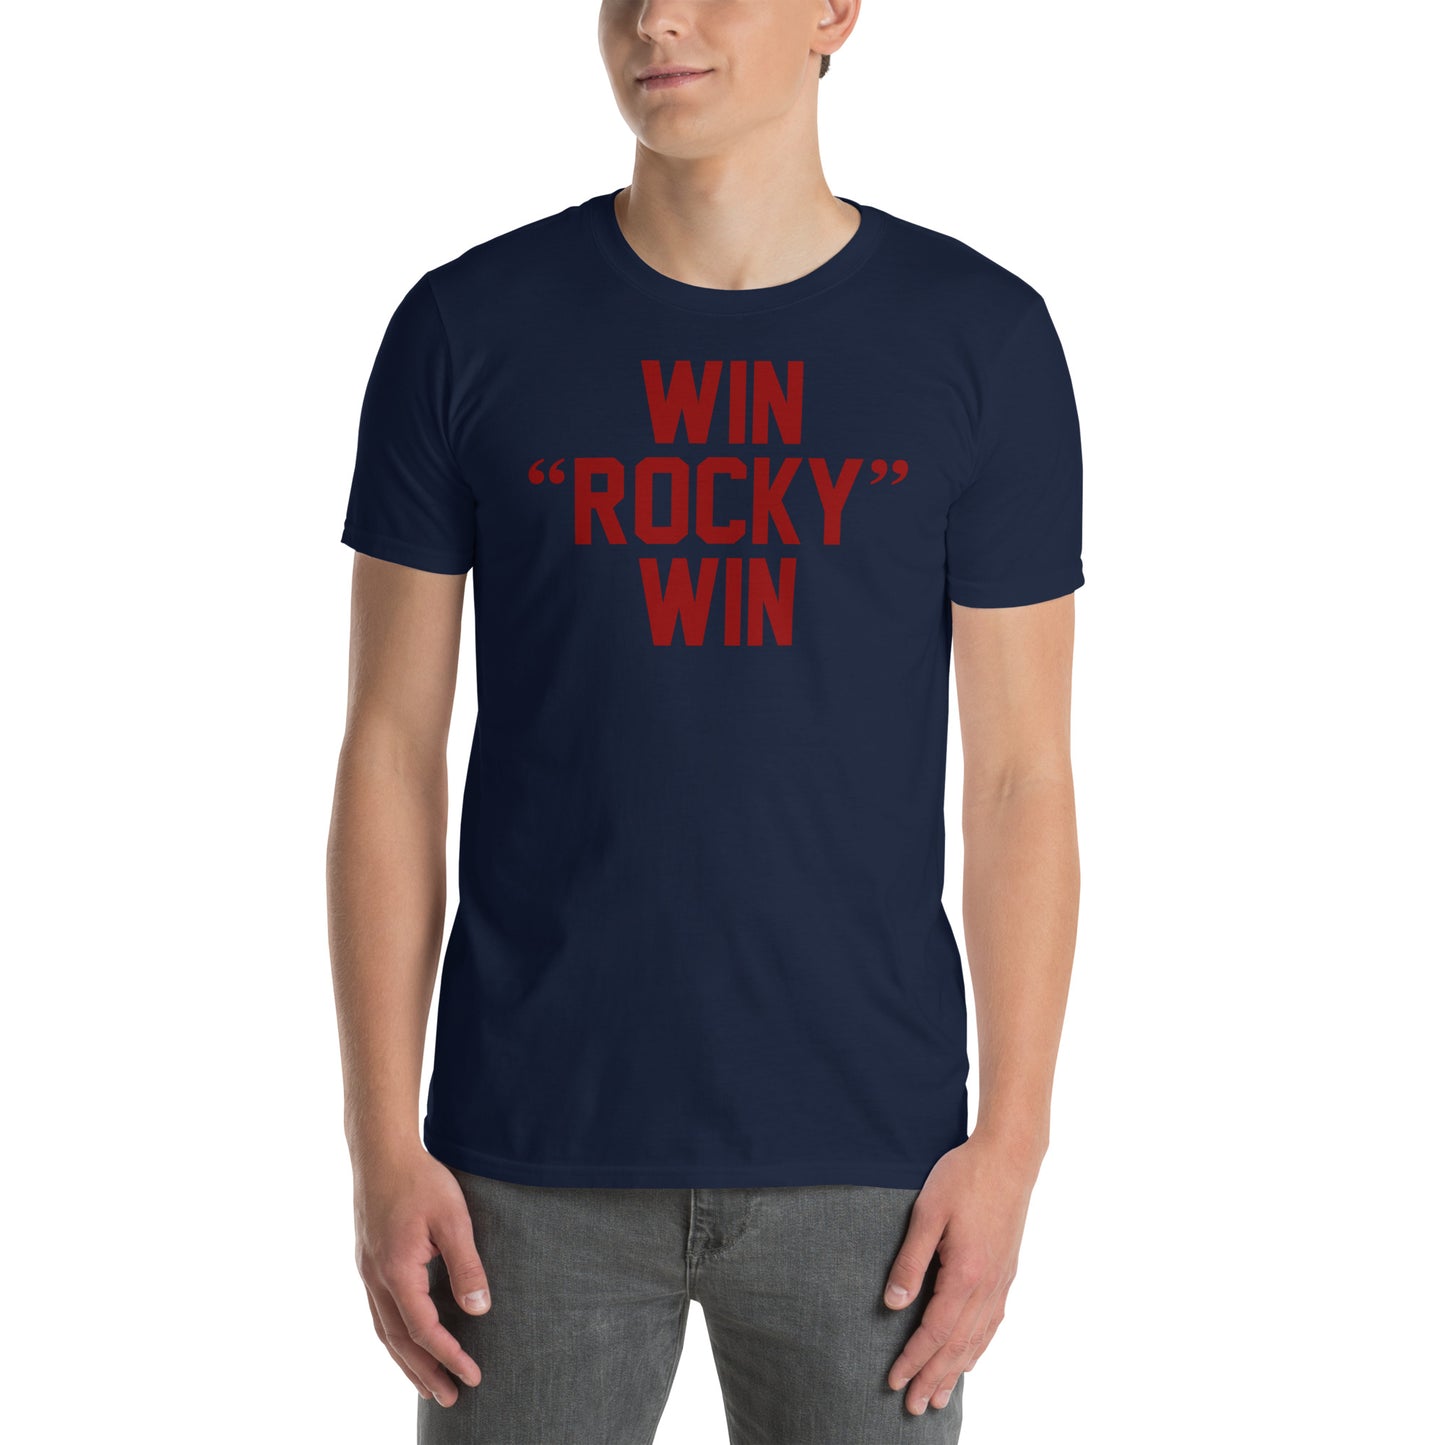 Camiseta Win Rocky Win de la película Rocky. Color azul marino.